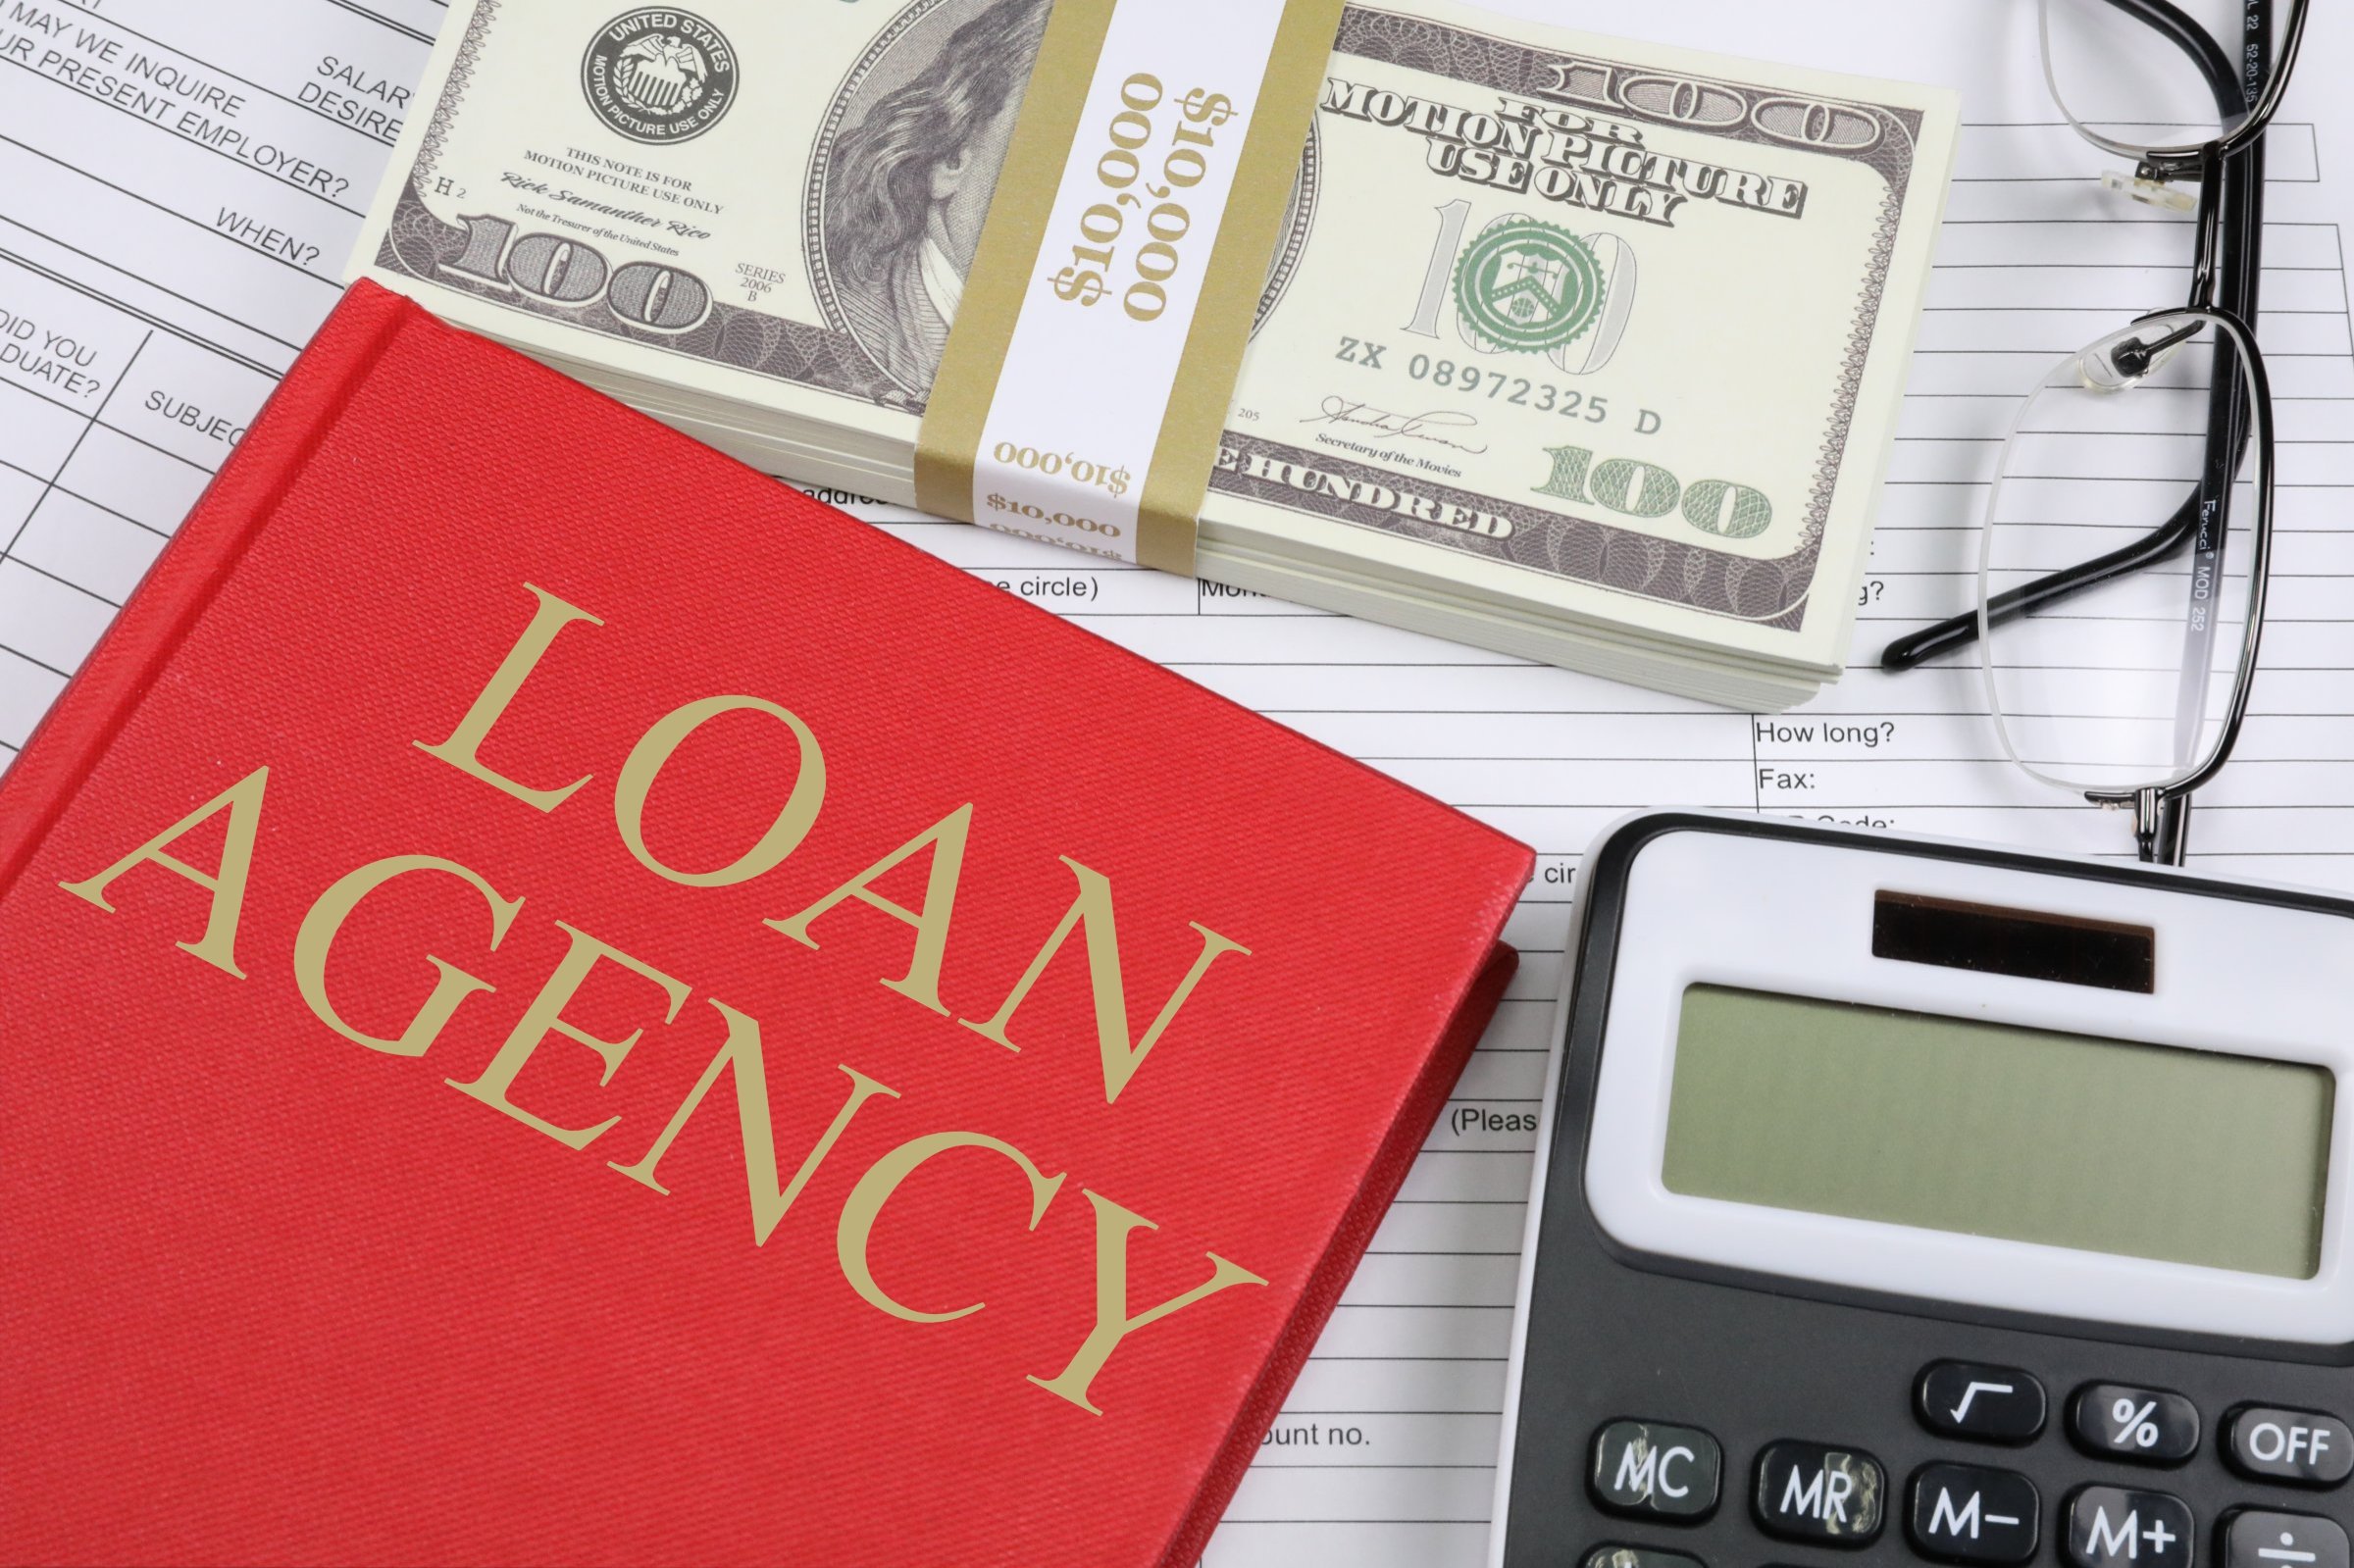 loan agency